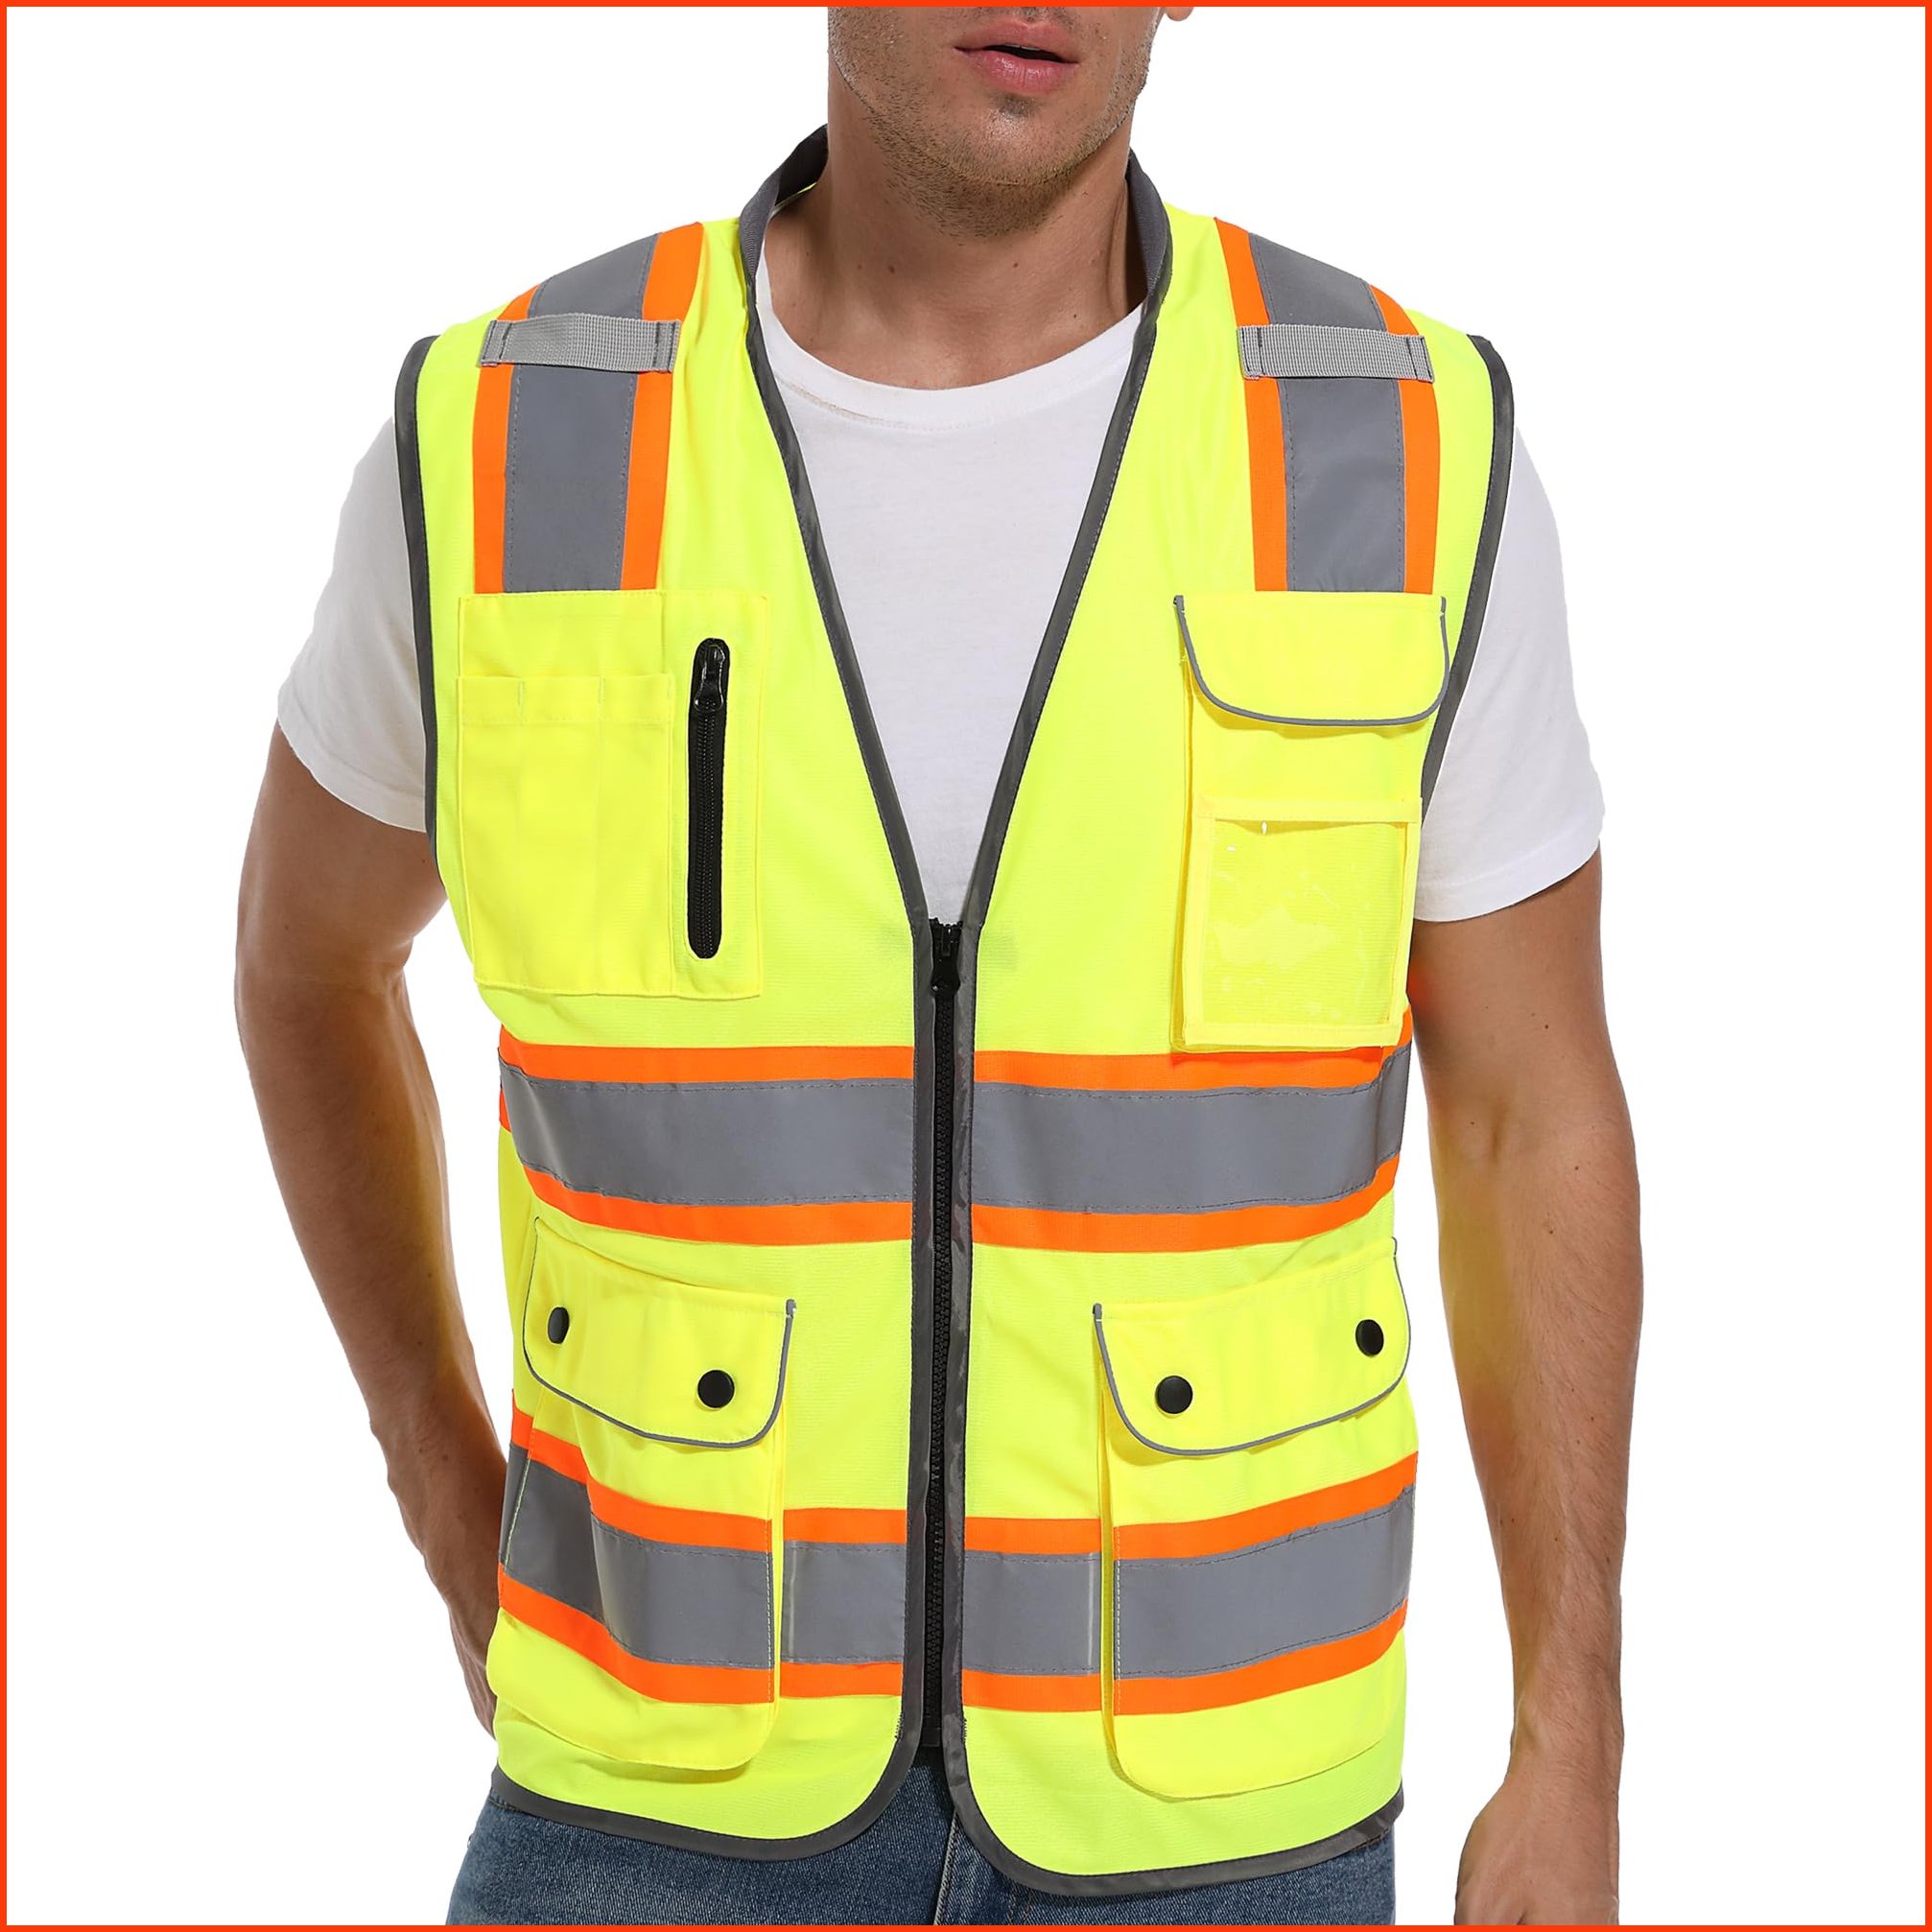 並行輸入品ArcRidge Reflective Safety Vest for Men and Women - Class 2 High Visibility Construction Vest - Dual Tone Refl